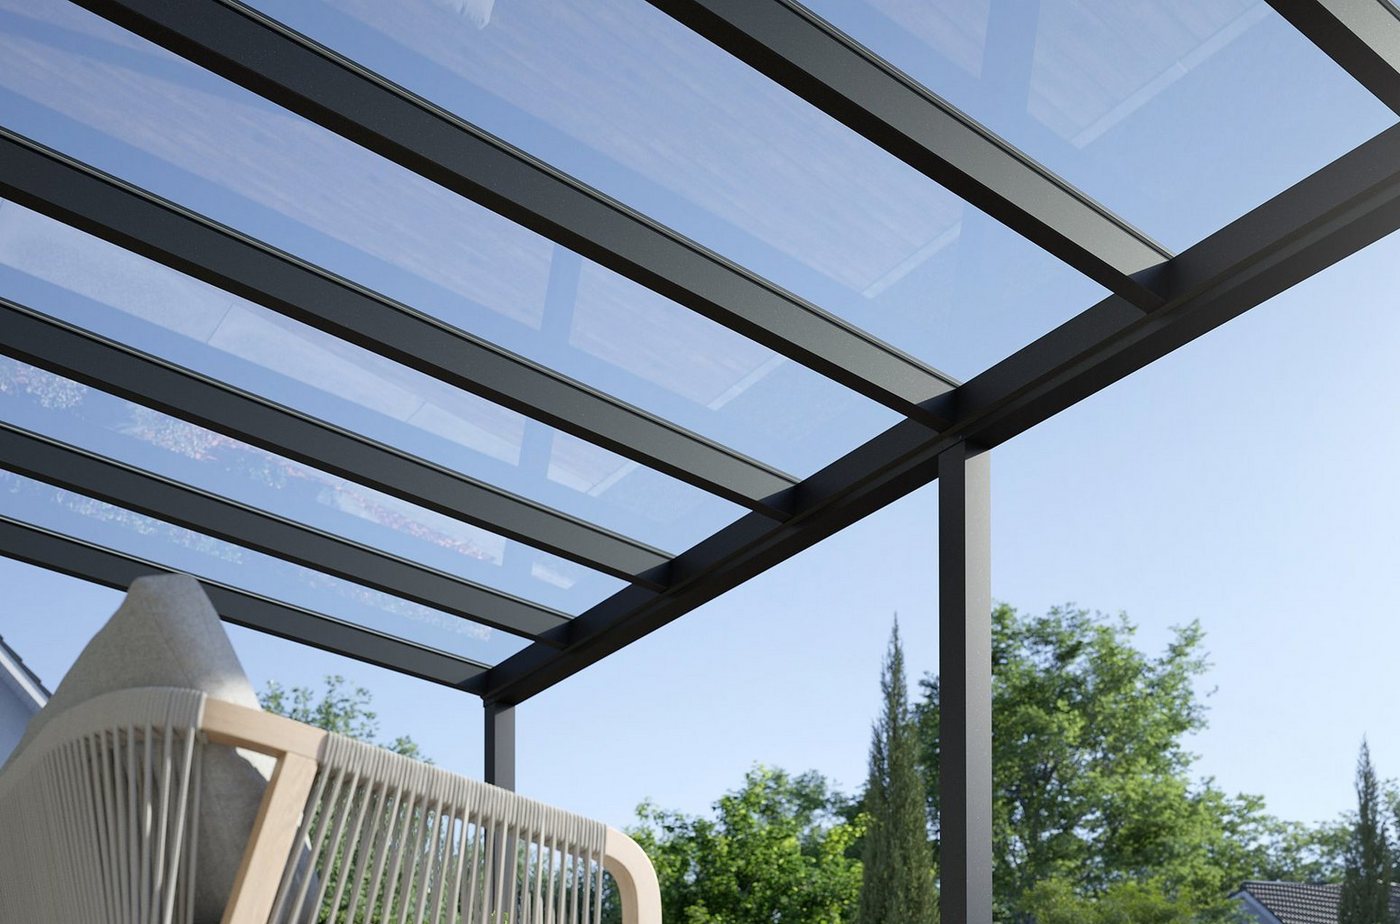 Rexin Terrassendach REXOpremium – hochwertiges Aluminium Terrassendach 5m x 2,5m, BxT: 506x250 cm, Bedachung VSG-Glas klar oder VSG-Glas grau, mit 4mm starken Profilen, Terassenüberdachung, Vordach von Rexin